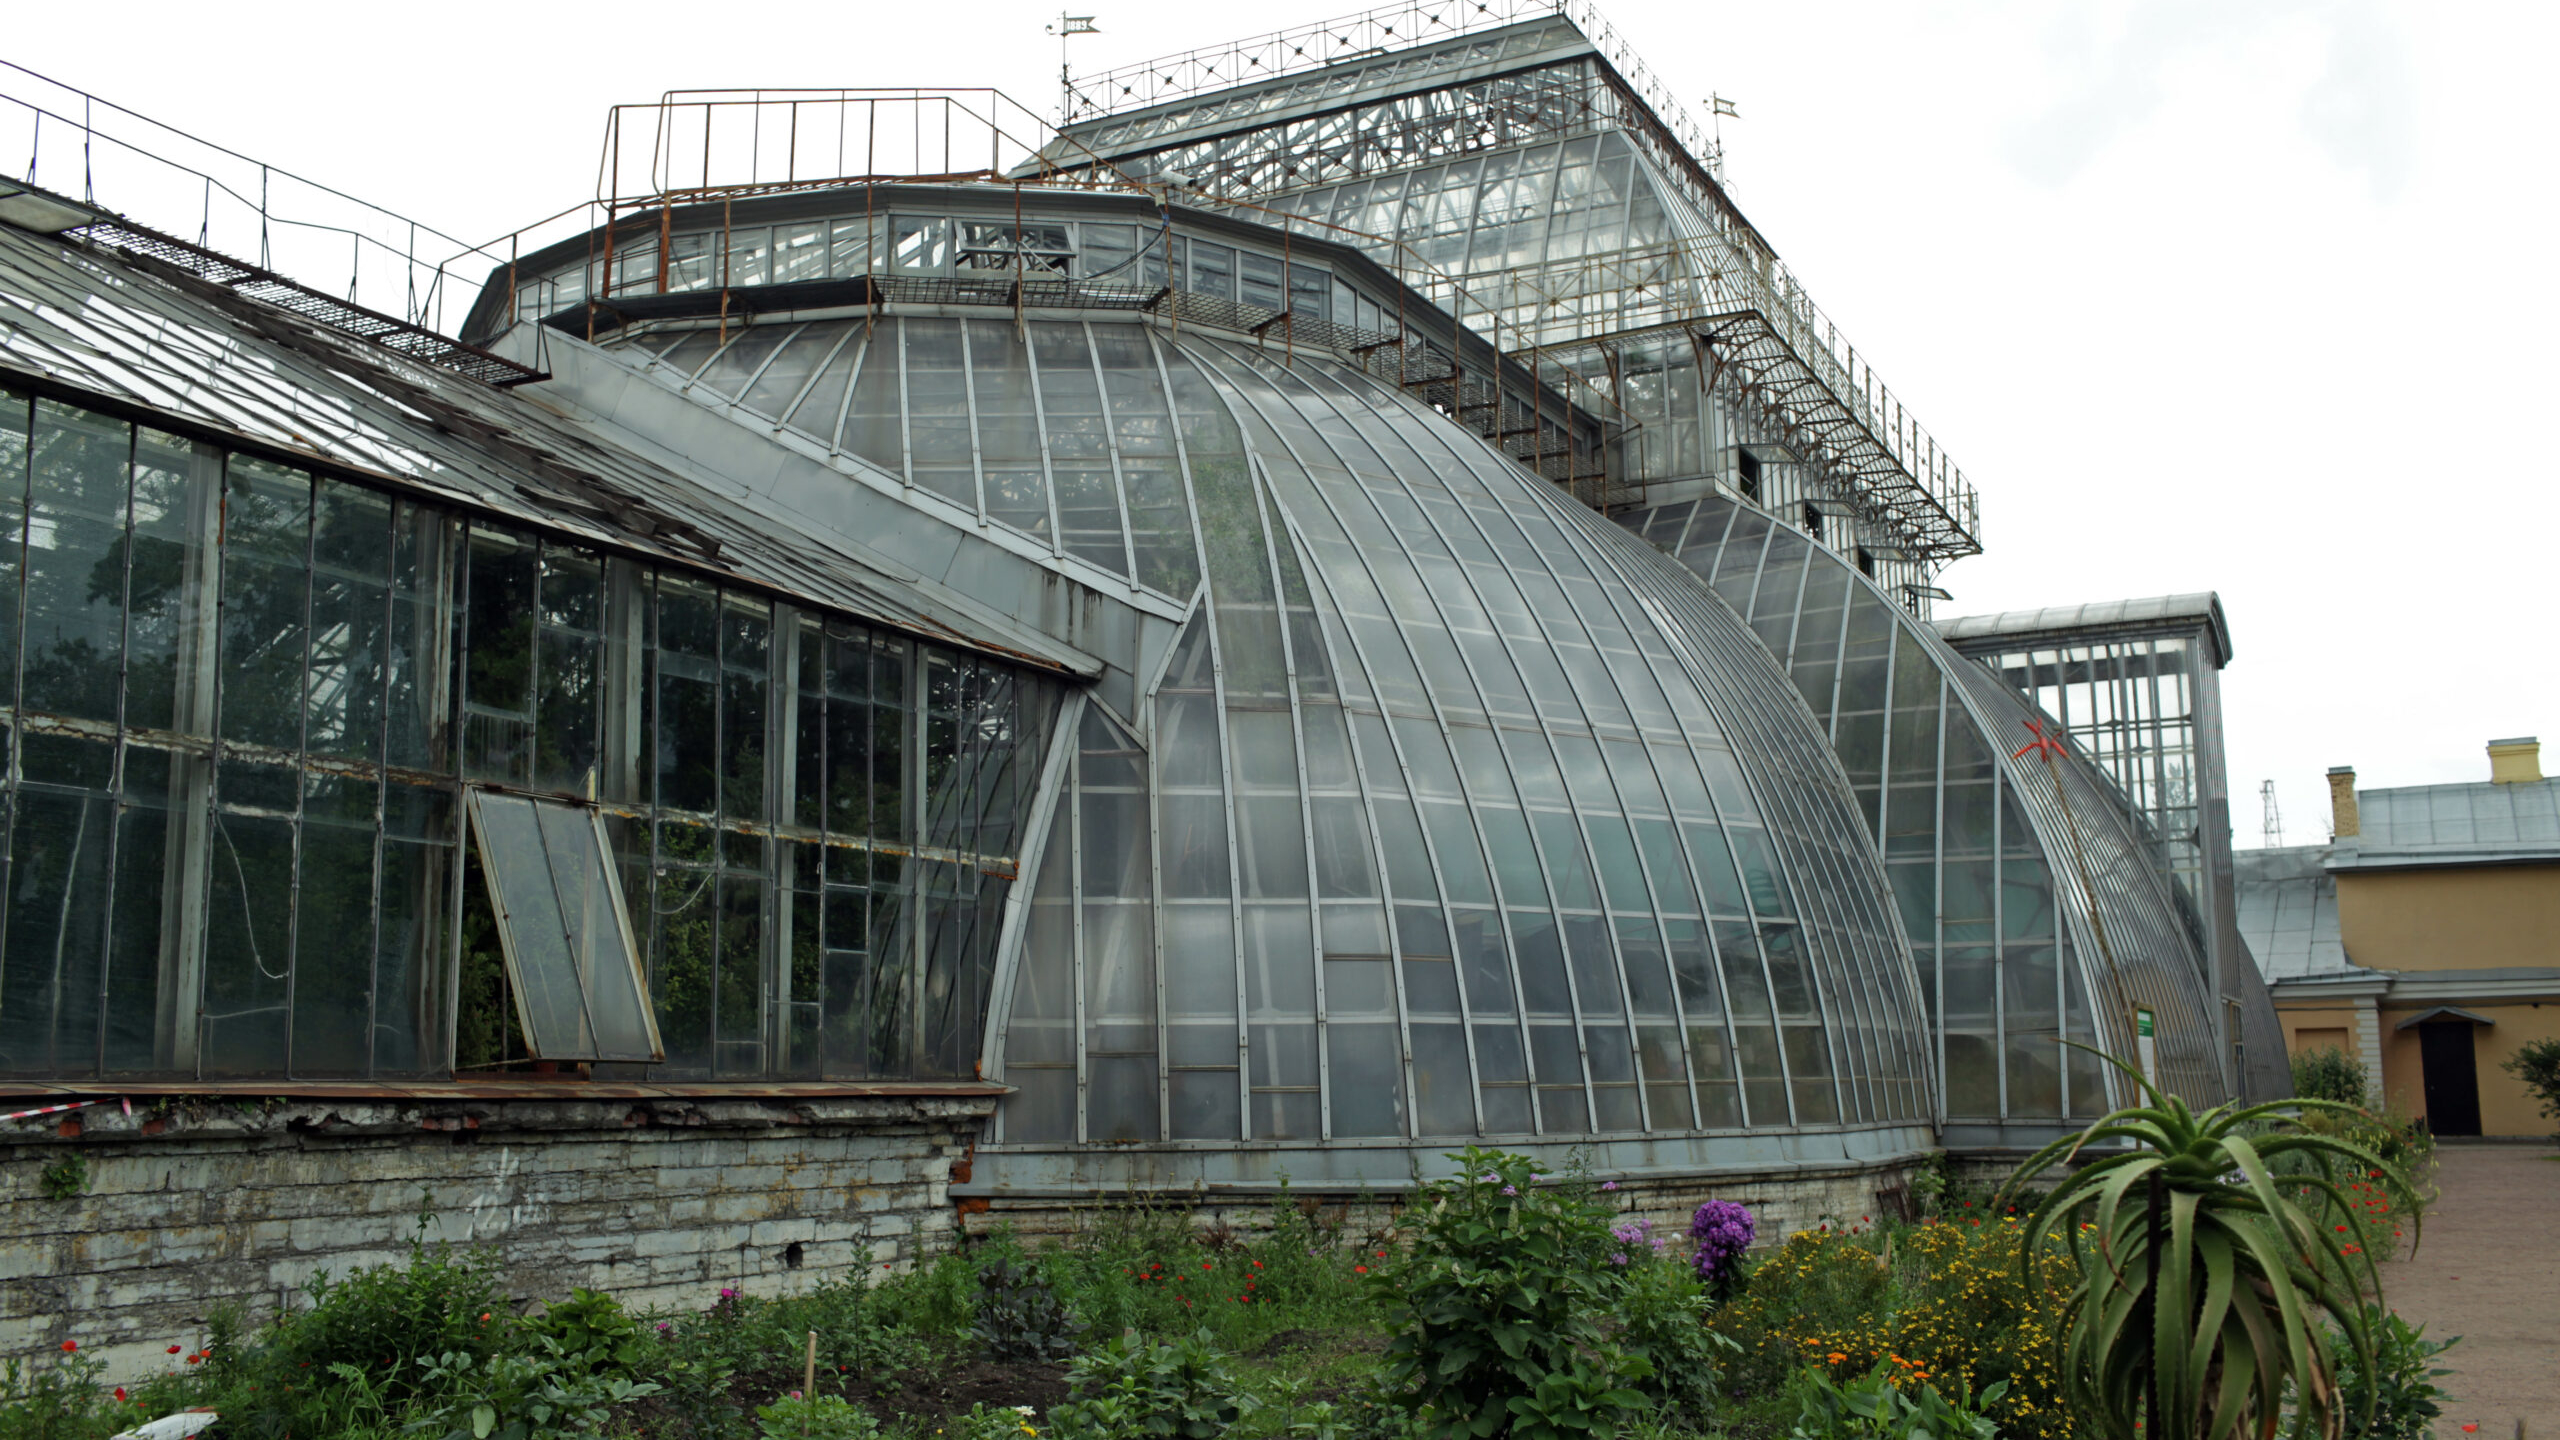 Ботанический сад вновь закрыл оранжереи из-за жаркой погоды